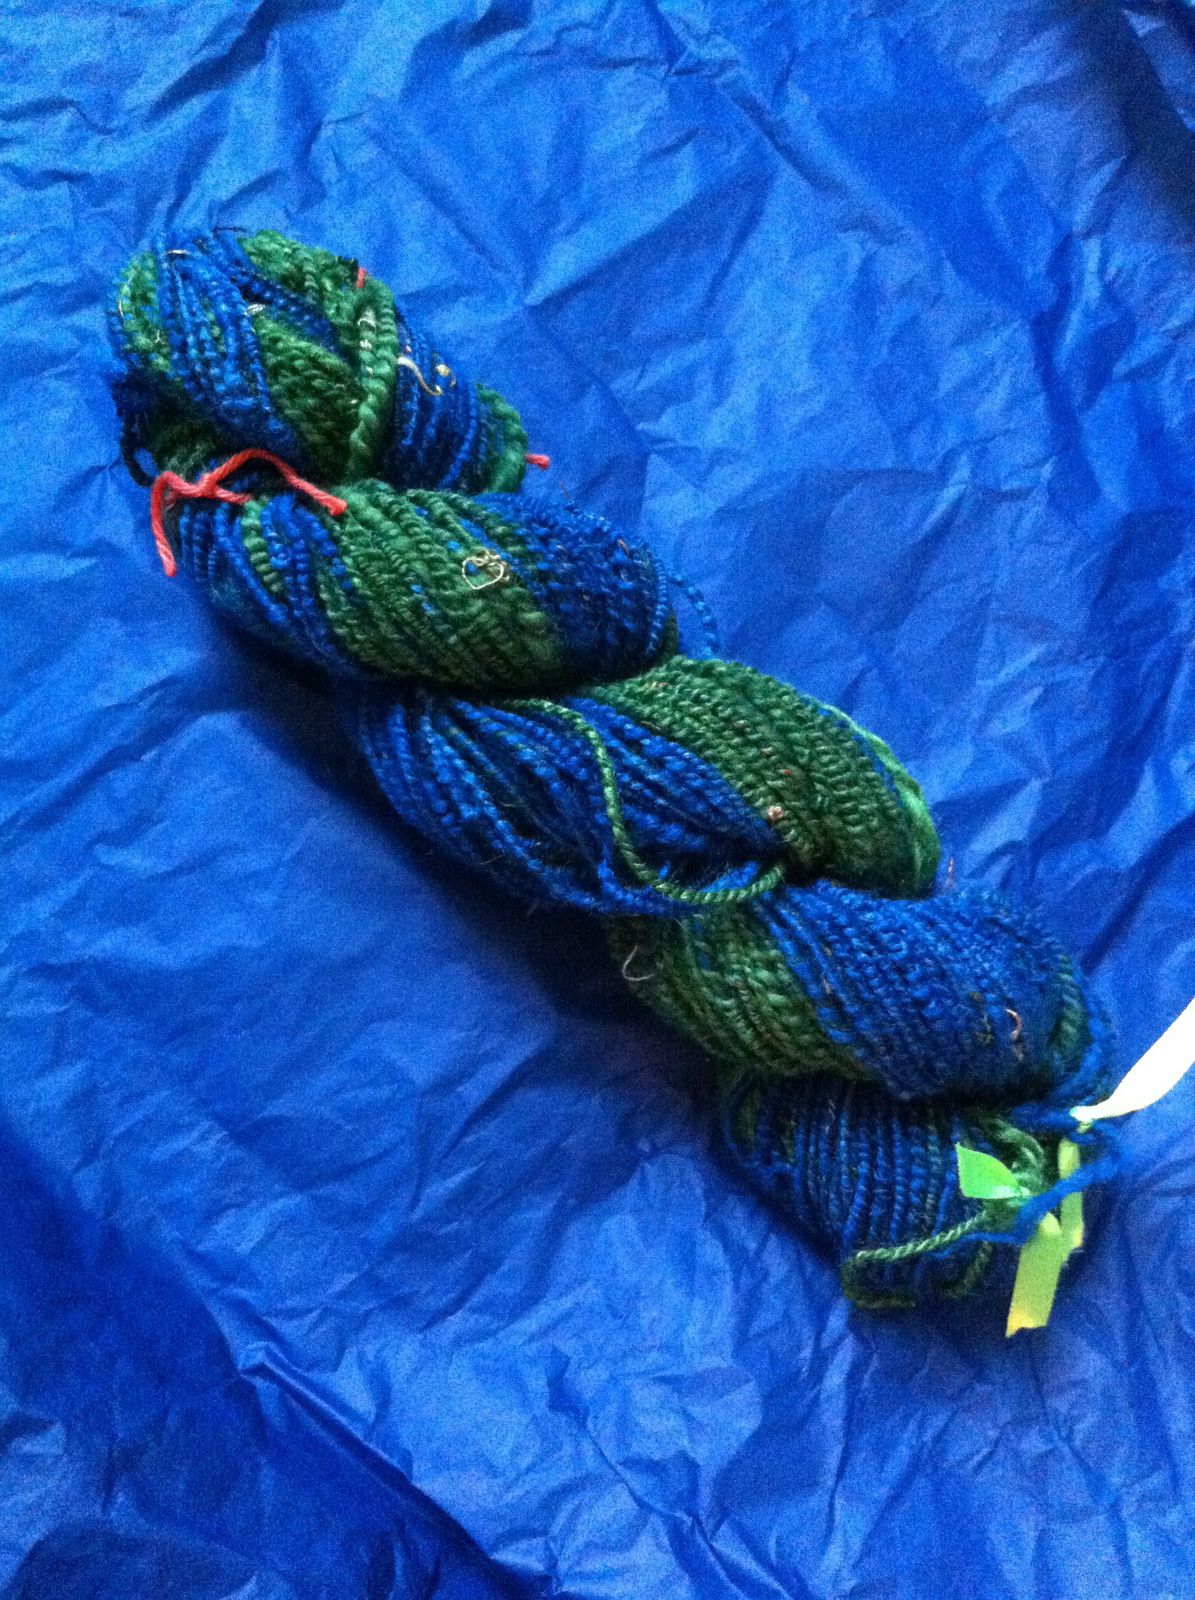 Pelote de laine layette multicolore tons bleus jaunes - Un grand marché